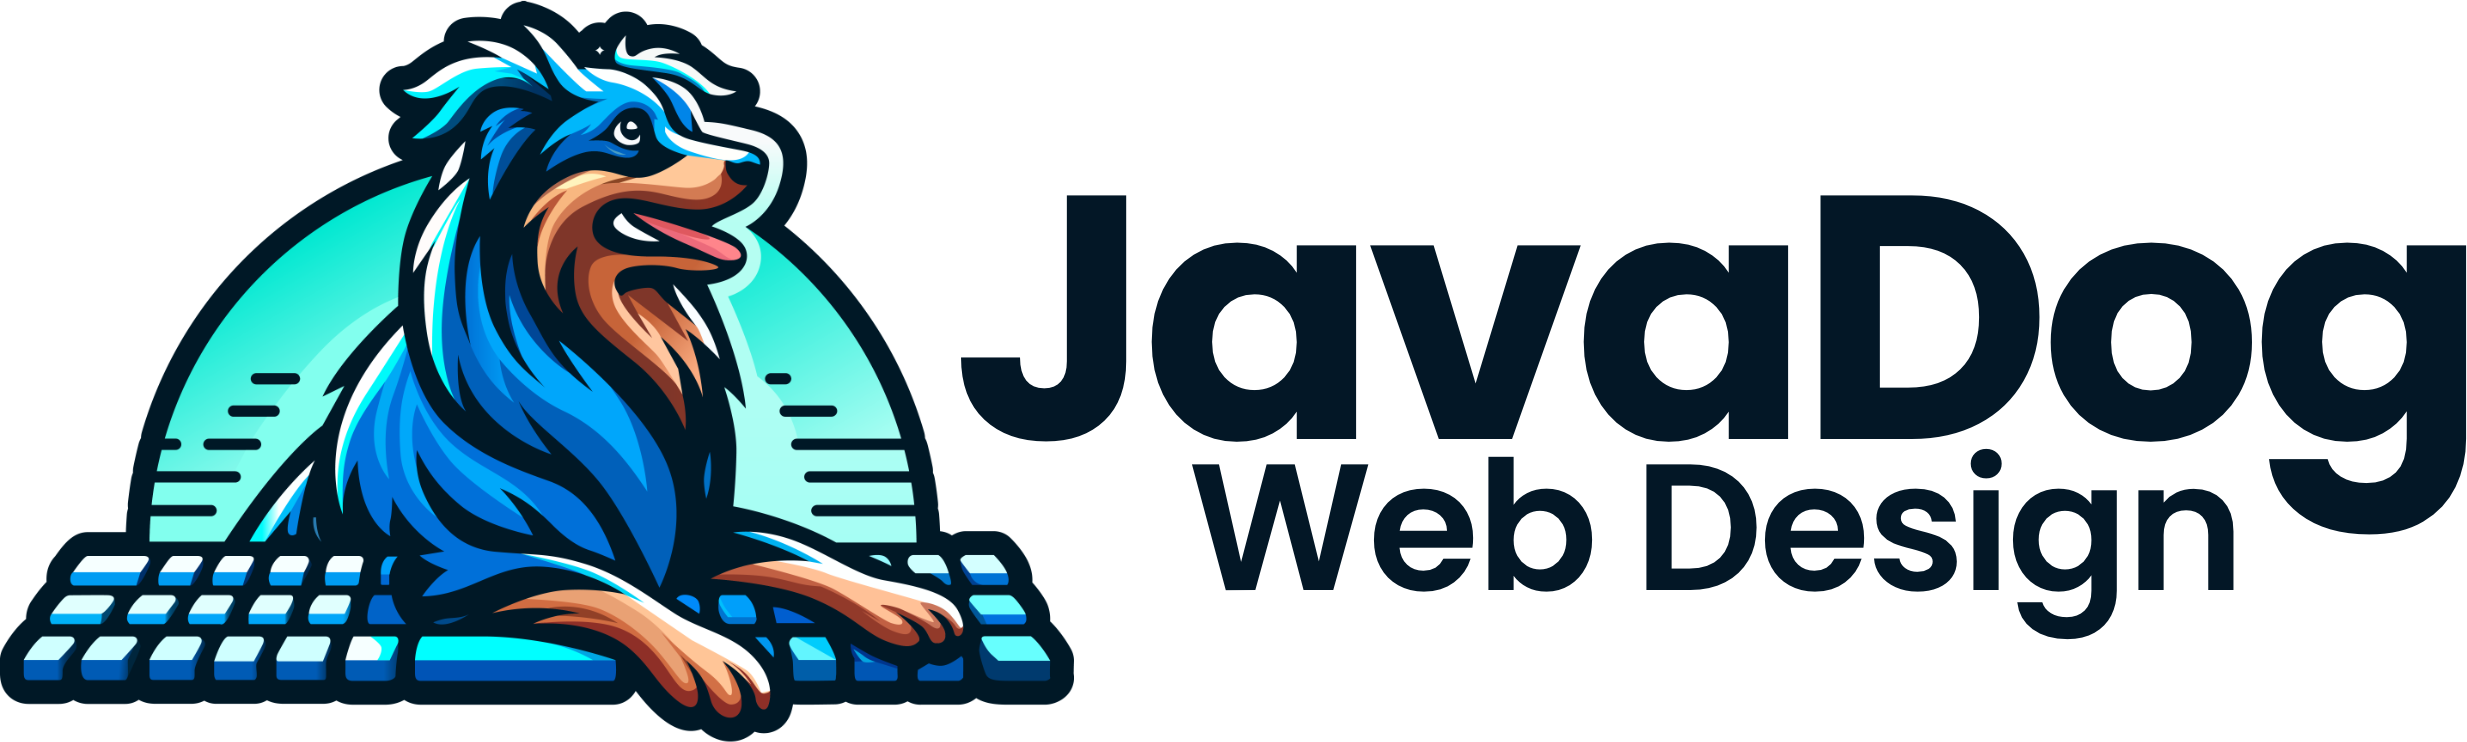 JavaDog Logo